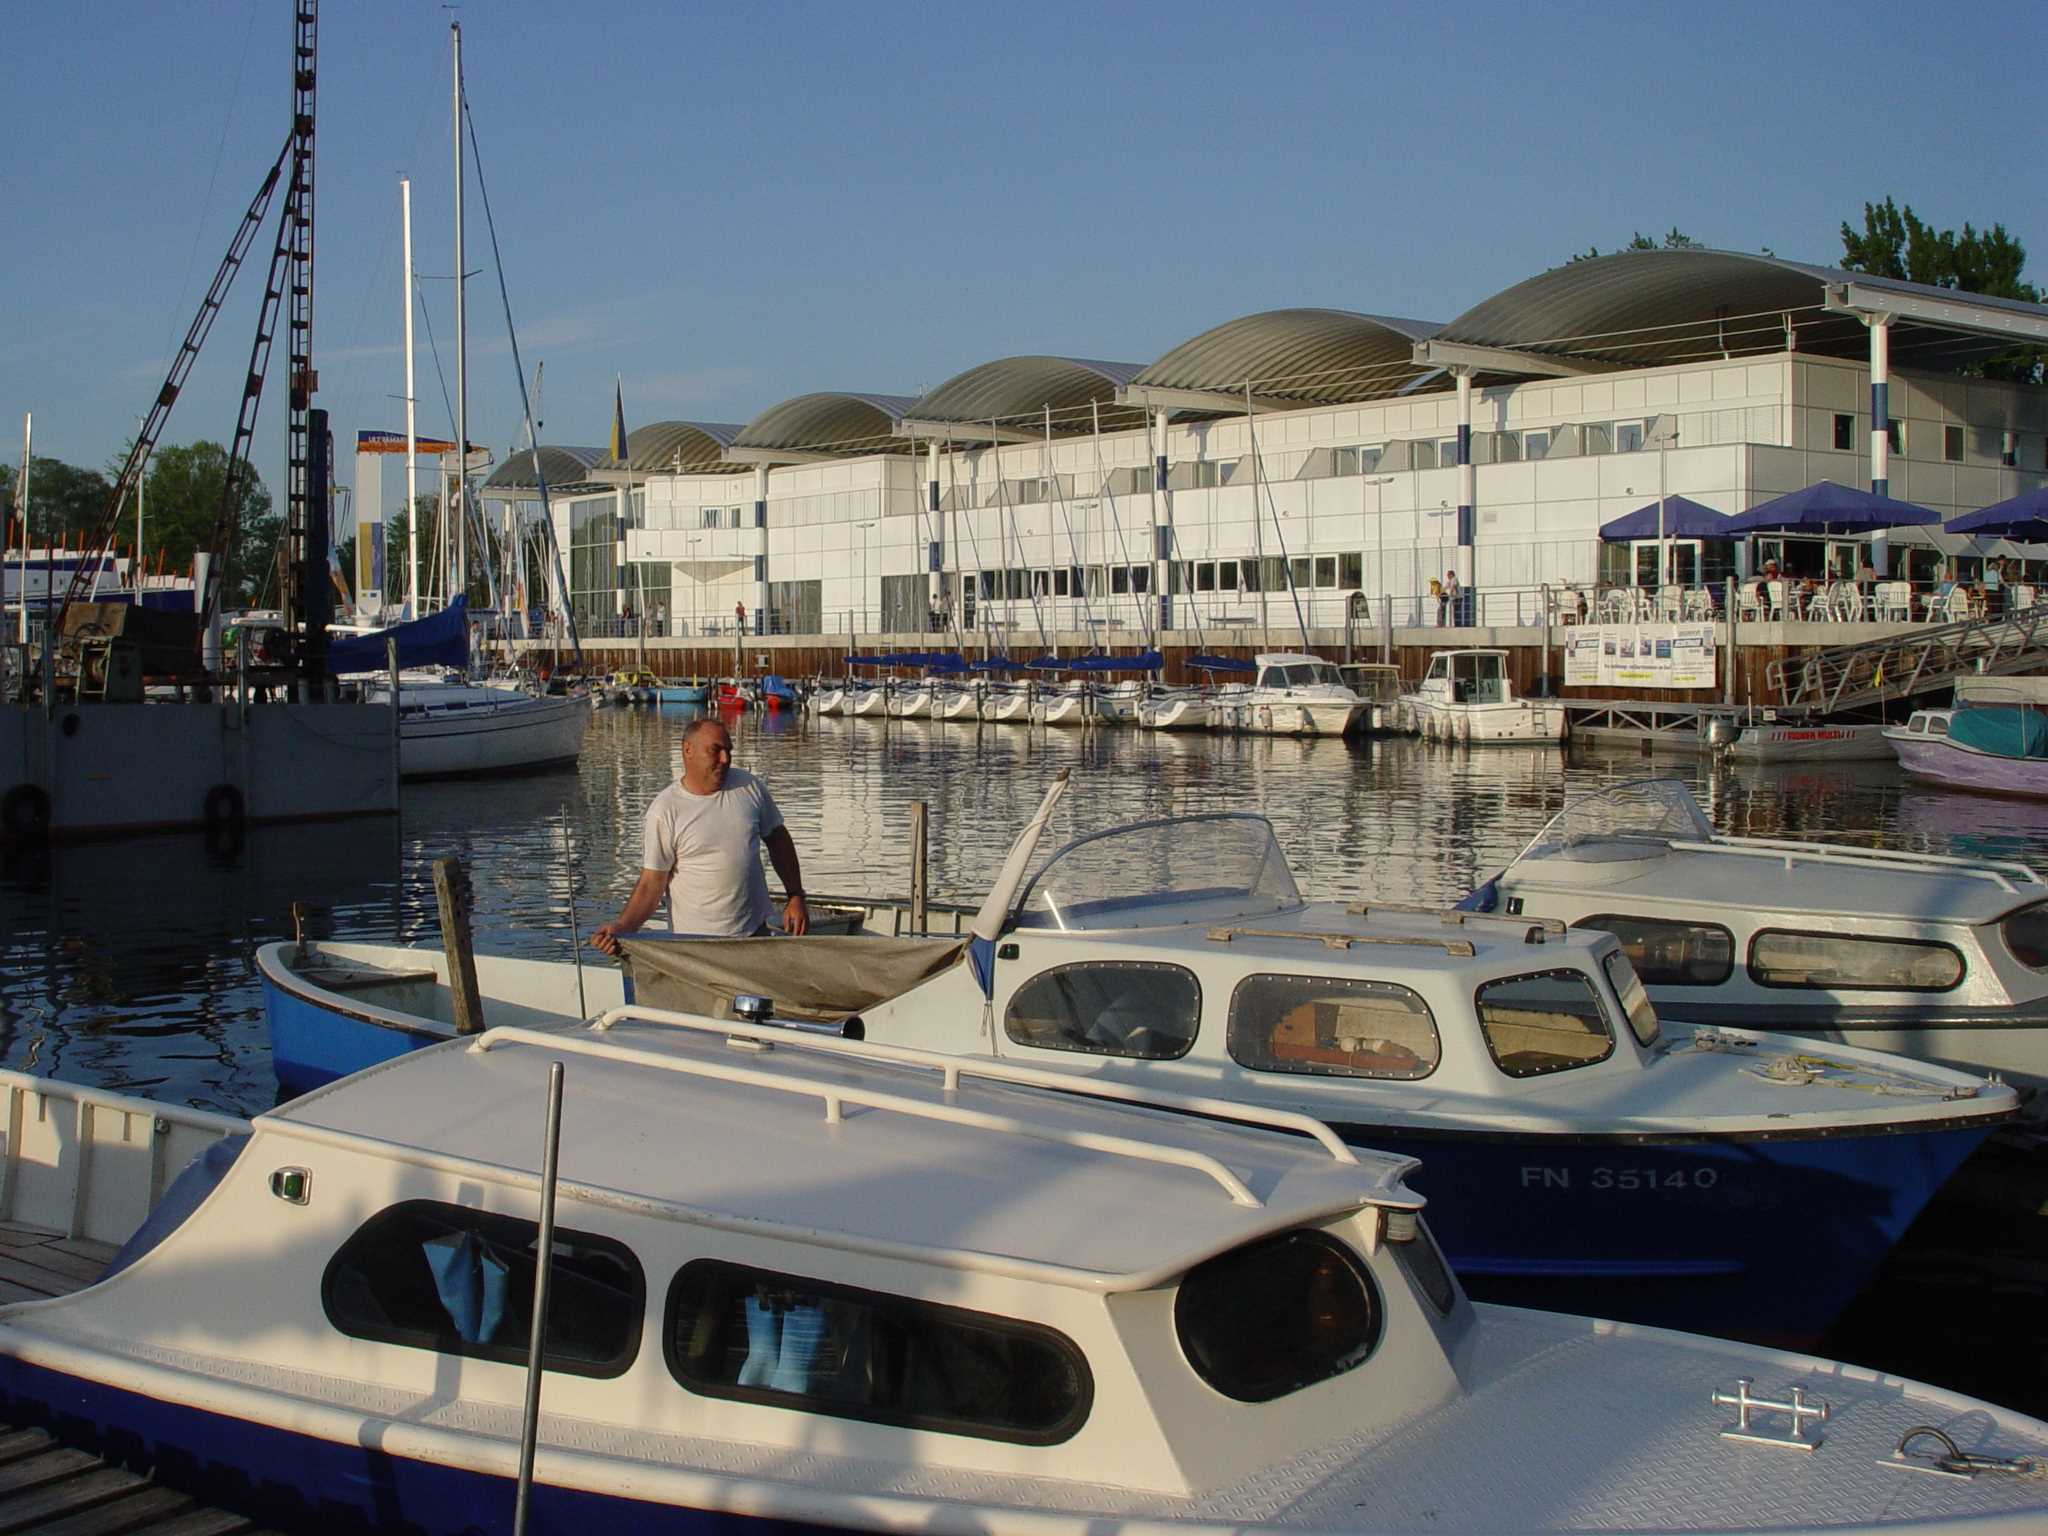 Bootshafen Meichle & Mohr Marina